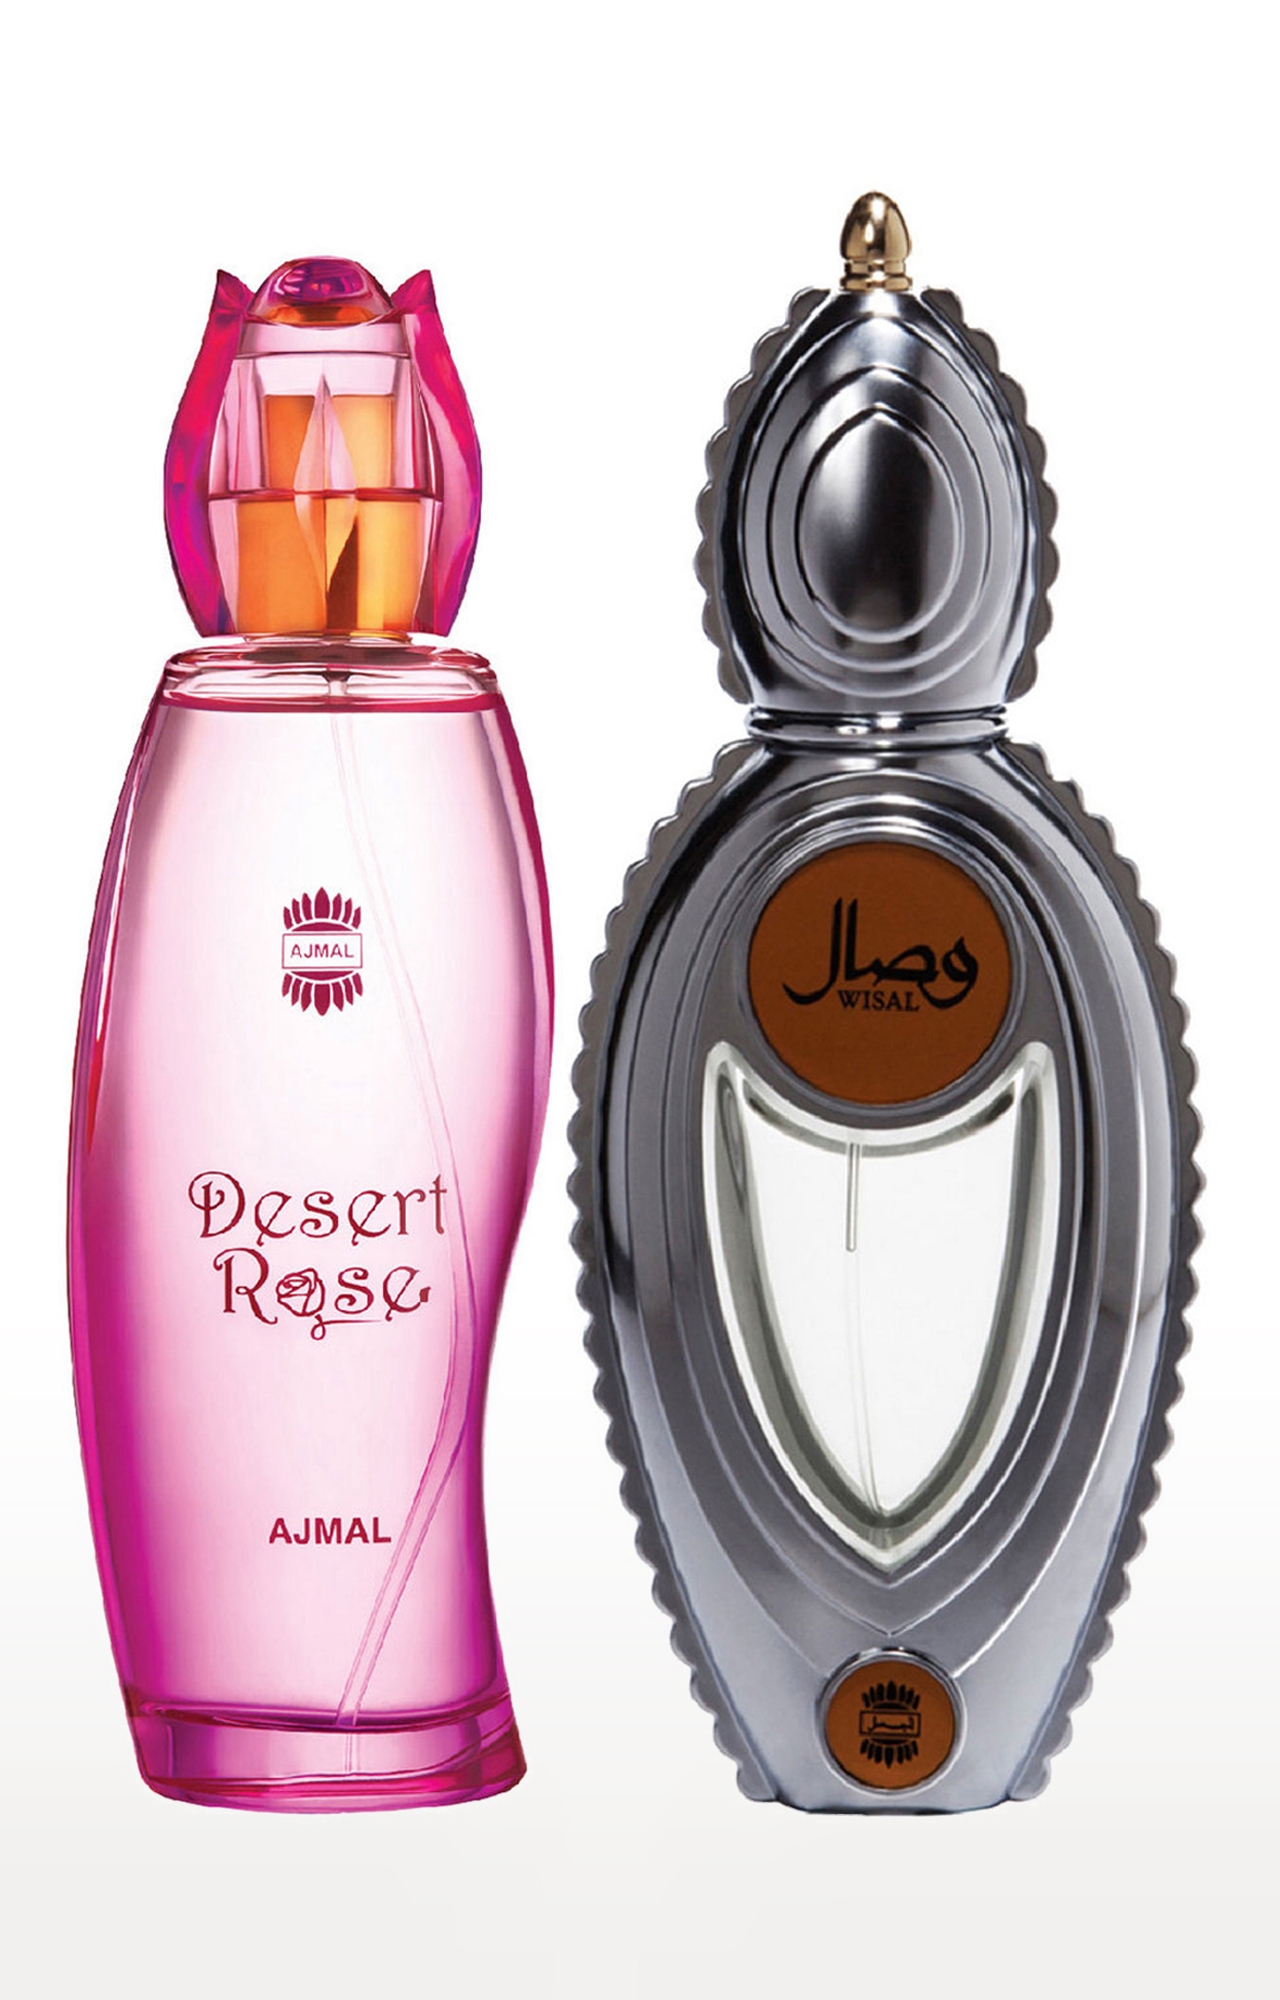 Ajmal | Ajmal Desert Rose EDP Oriental Perfume 100ml for Women and Wisal EDP Musky Perfume 50ml for Women